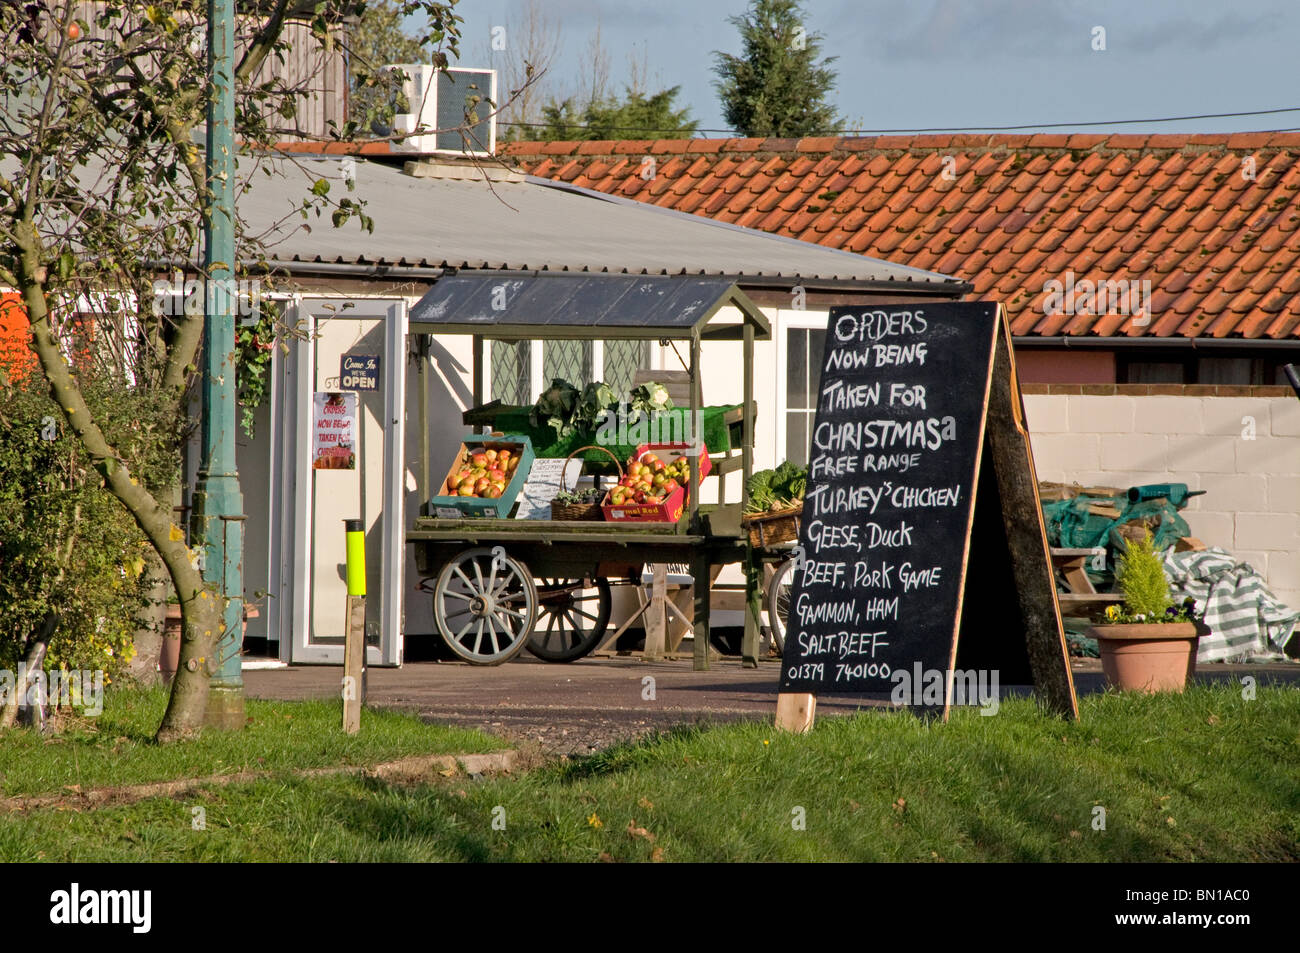 Aldea Rural carretera Farm shop vendiendo productos locales Foto de stock